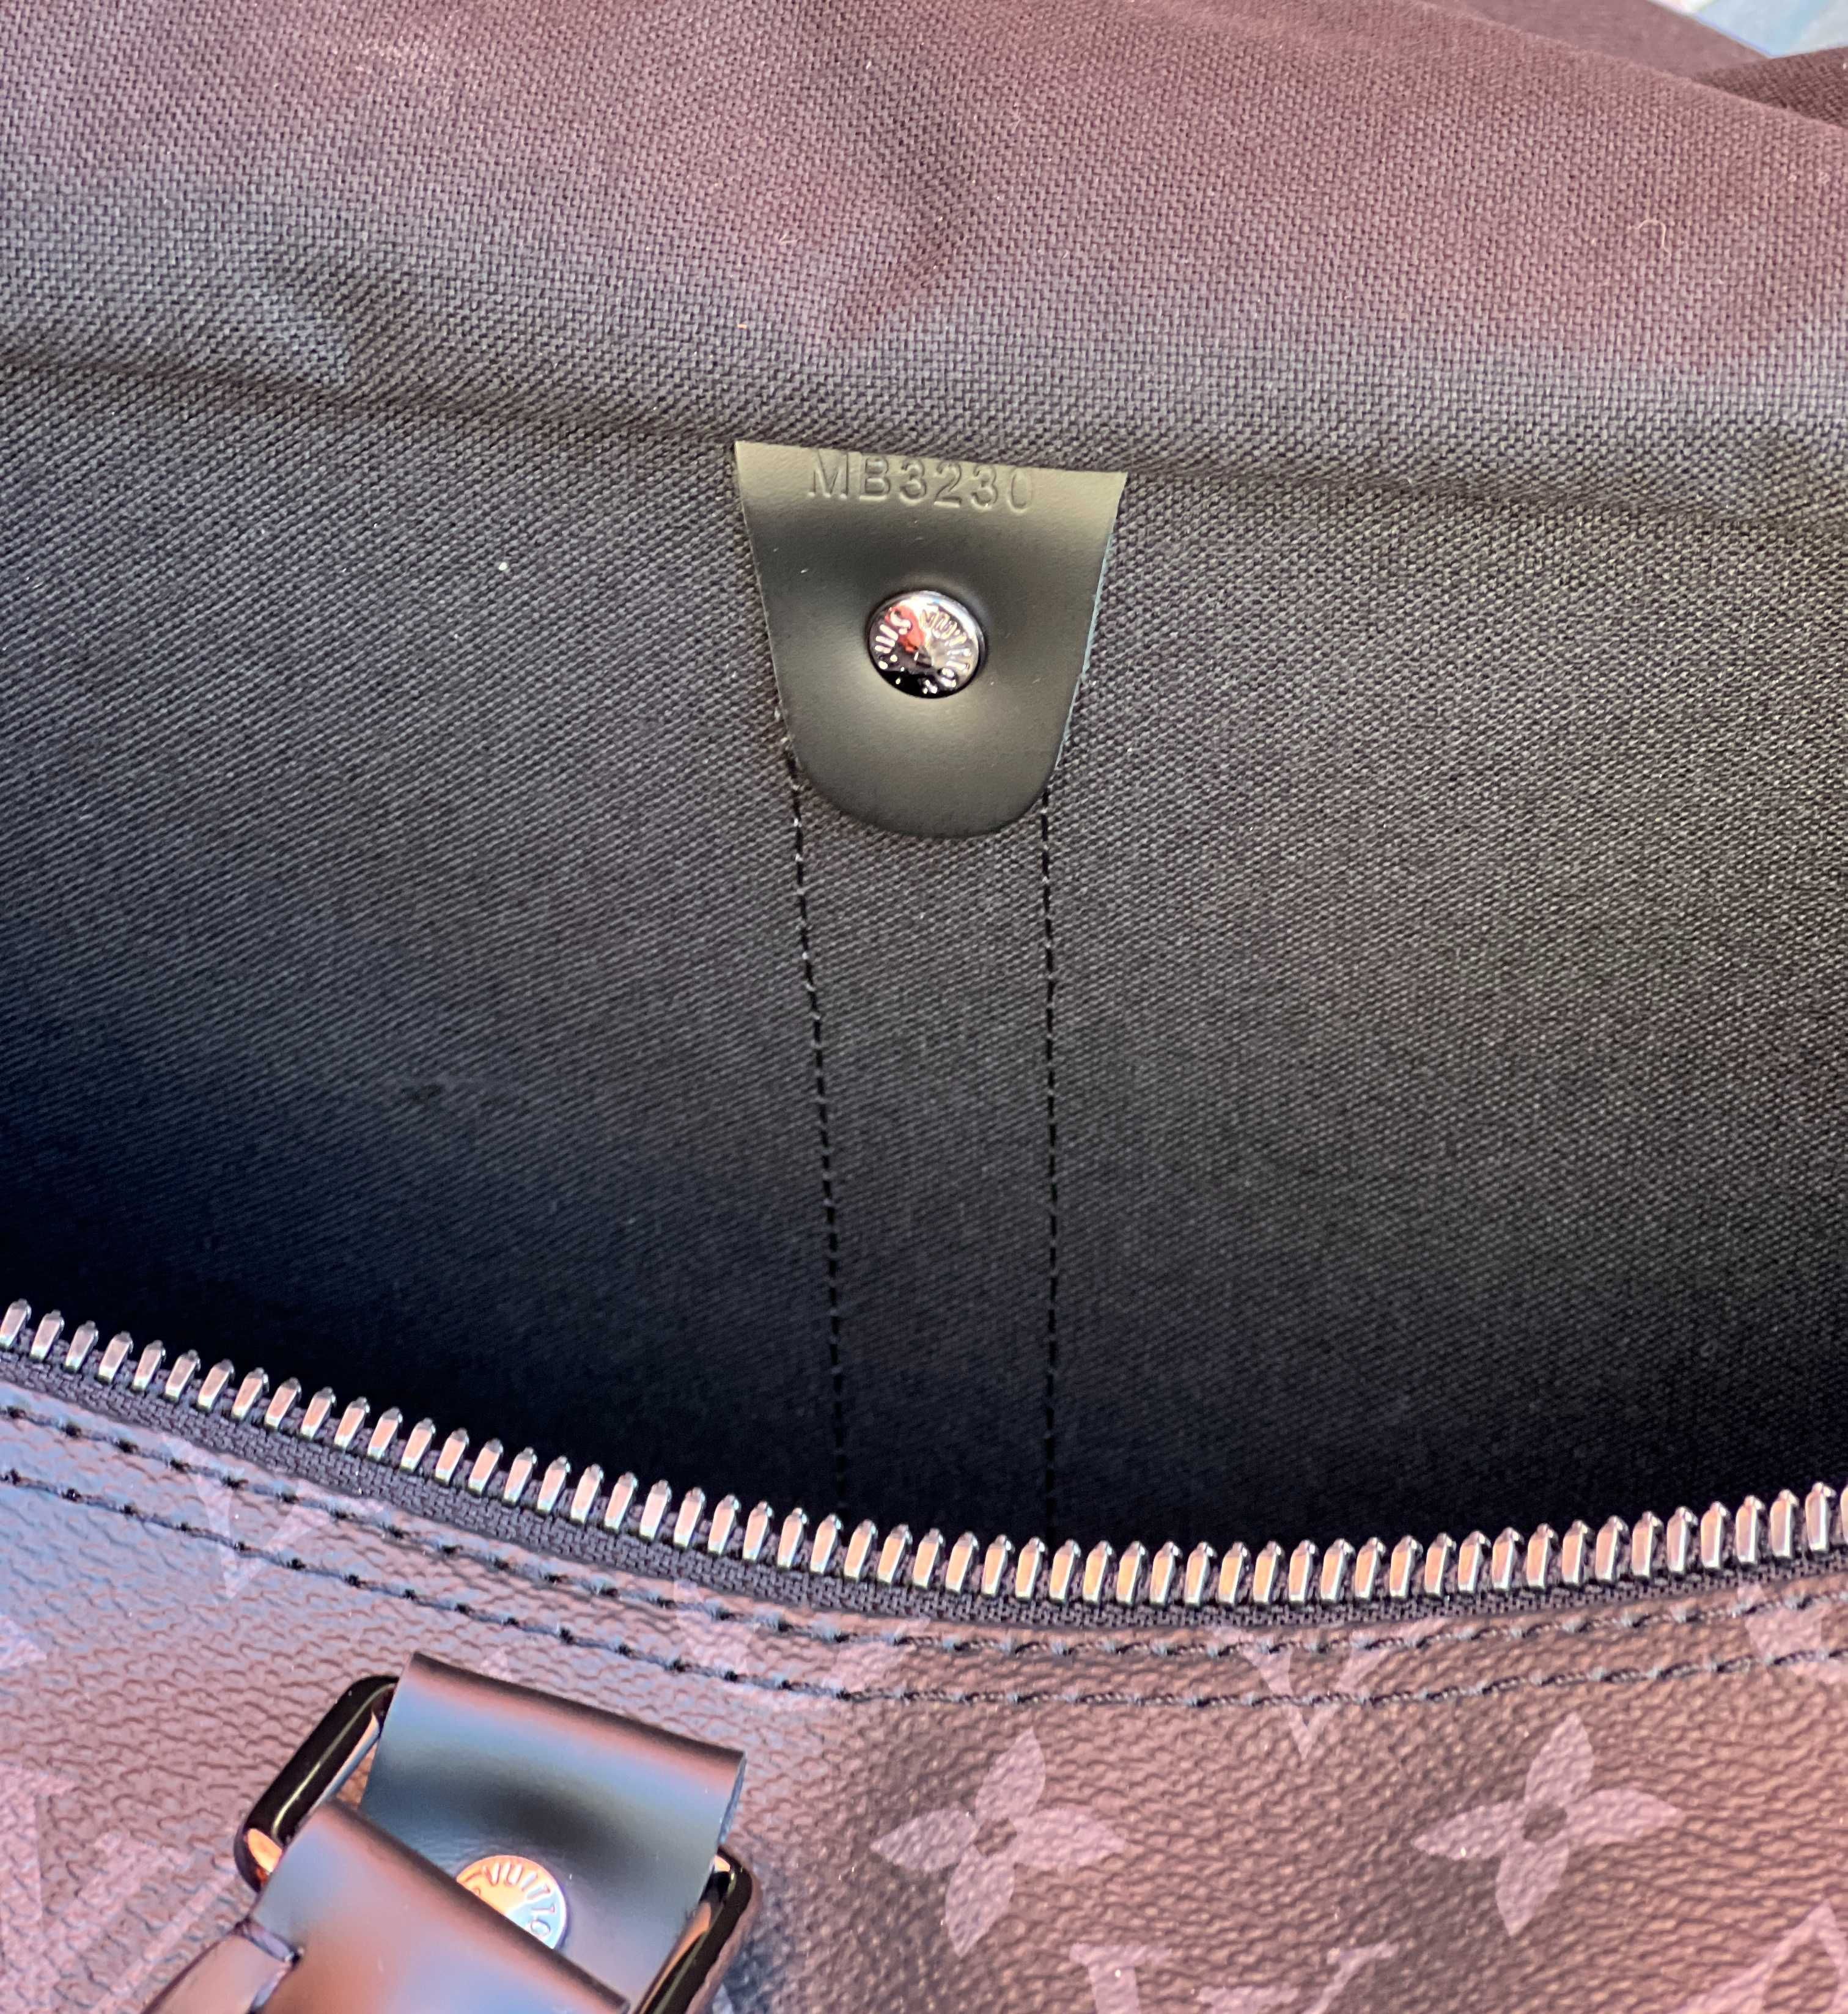 Дорожная сумка ручная кладь Keepall Louis Vuitton Damier Graphite